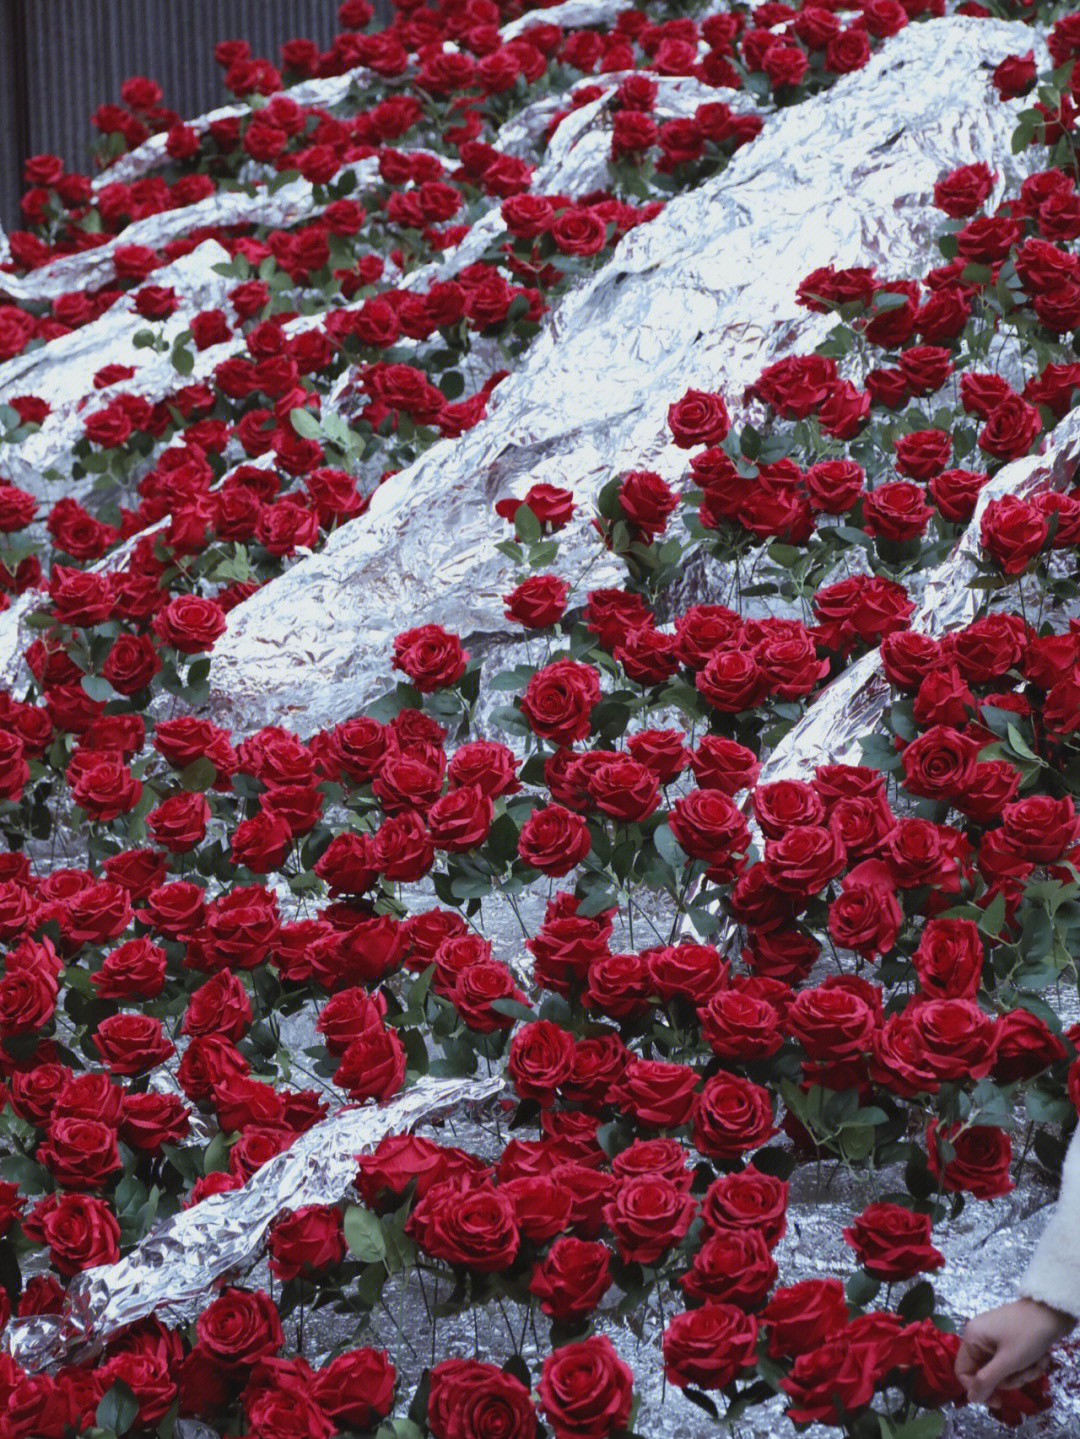 冰川玫瑰北京图片